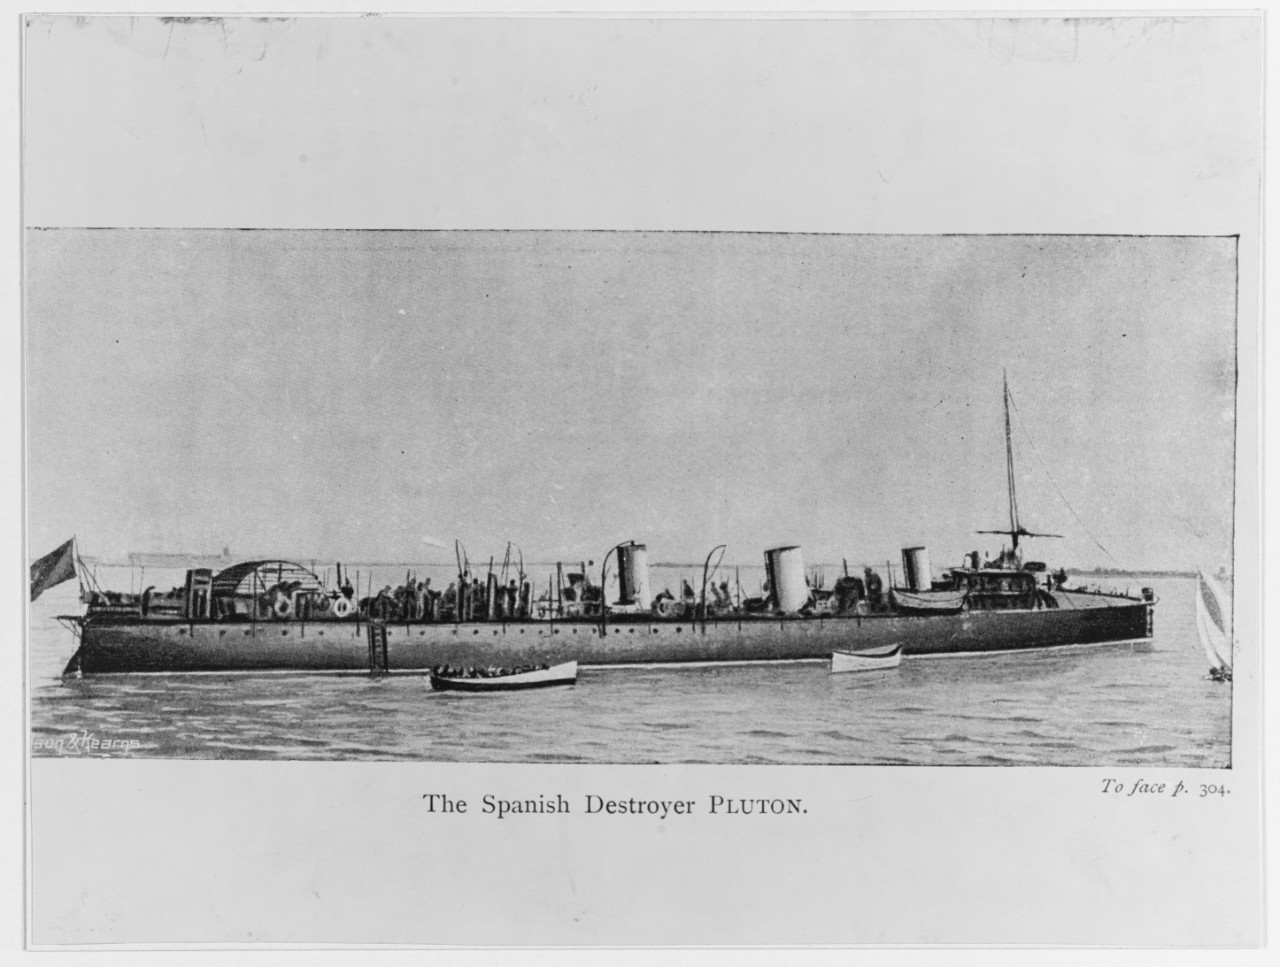 PLUTON (Spanish destroyer, 1897-1898)